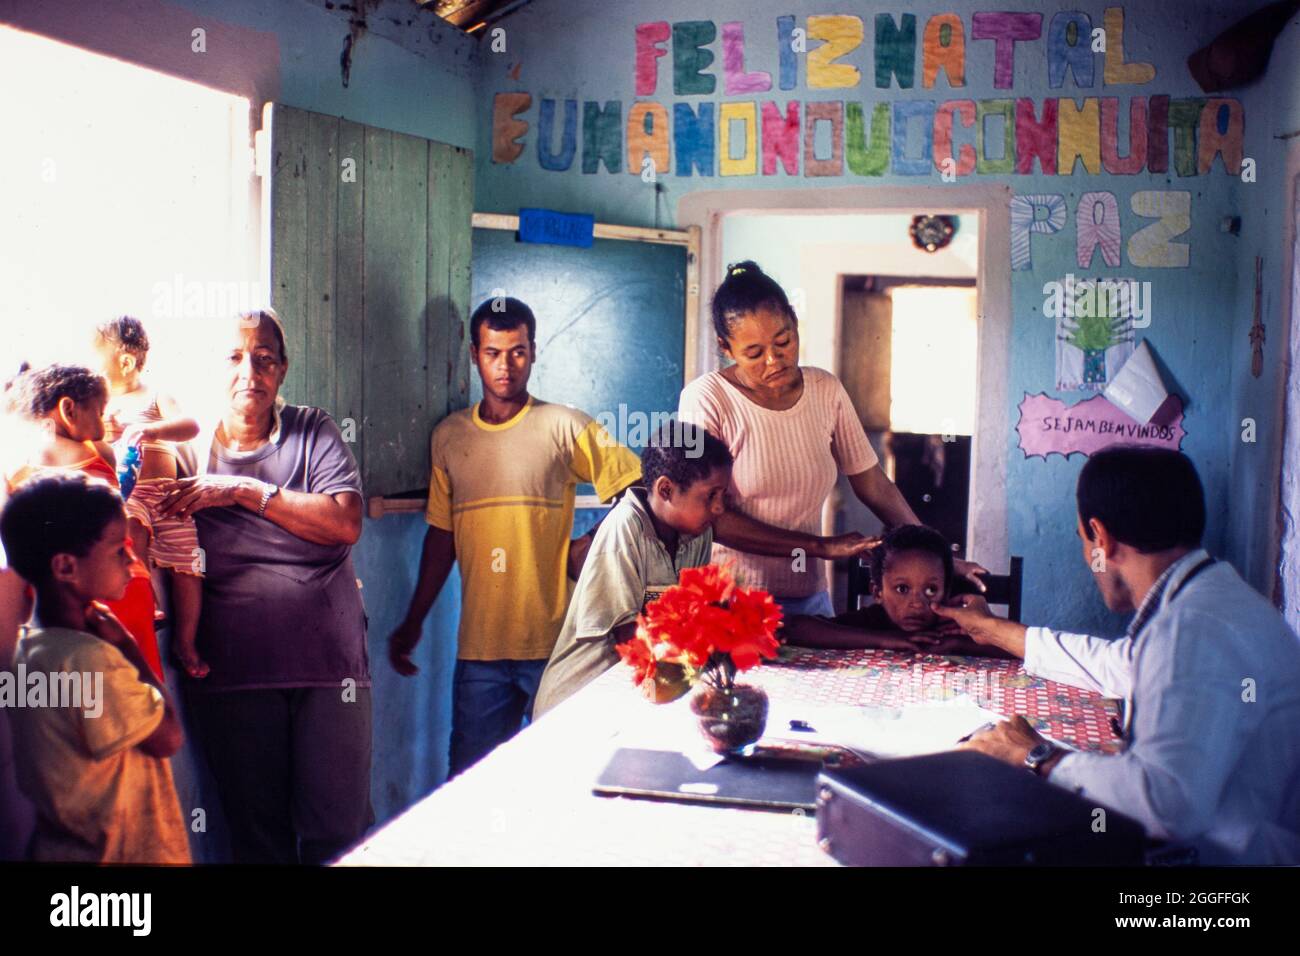 Programm für Familiendoktor ( Programa Medico de Familia ) unterstützt von der brasilianischen Regierung - arme Familien aus dem ländlichen Brasilien erhalten medizinische Versorgung und Familienmedizin an der lokalen ländlichen Schule, basierend auf dem Wissen des Patienten im Kontext der Familie und der Gemeinschaft, wobei der Schwerpunkt auf der Prävention von Krankheiten und Gesundheitsförderung liegt. Stockfoto